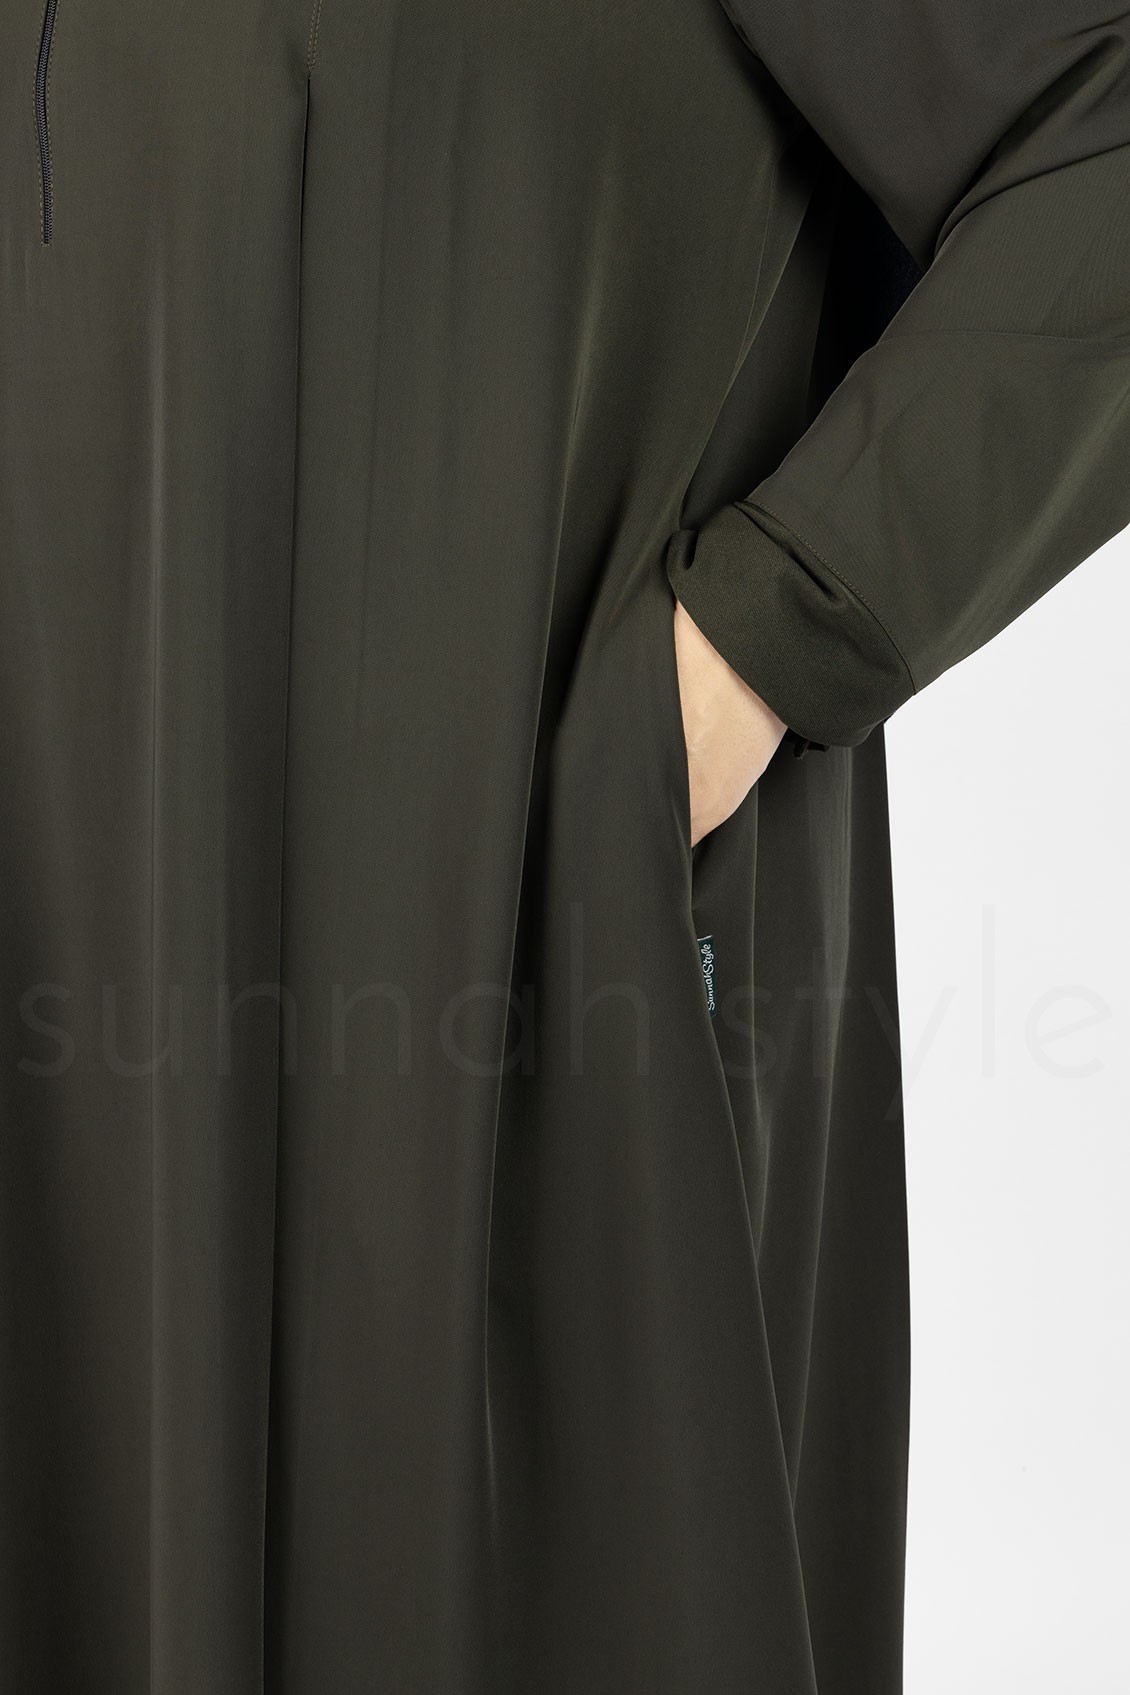 Sunnah Style Belle Umbrella Abaya Midnight Green